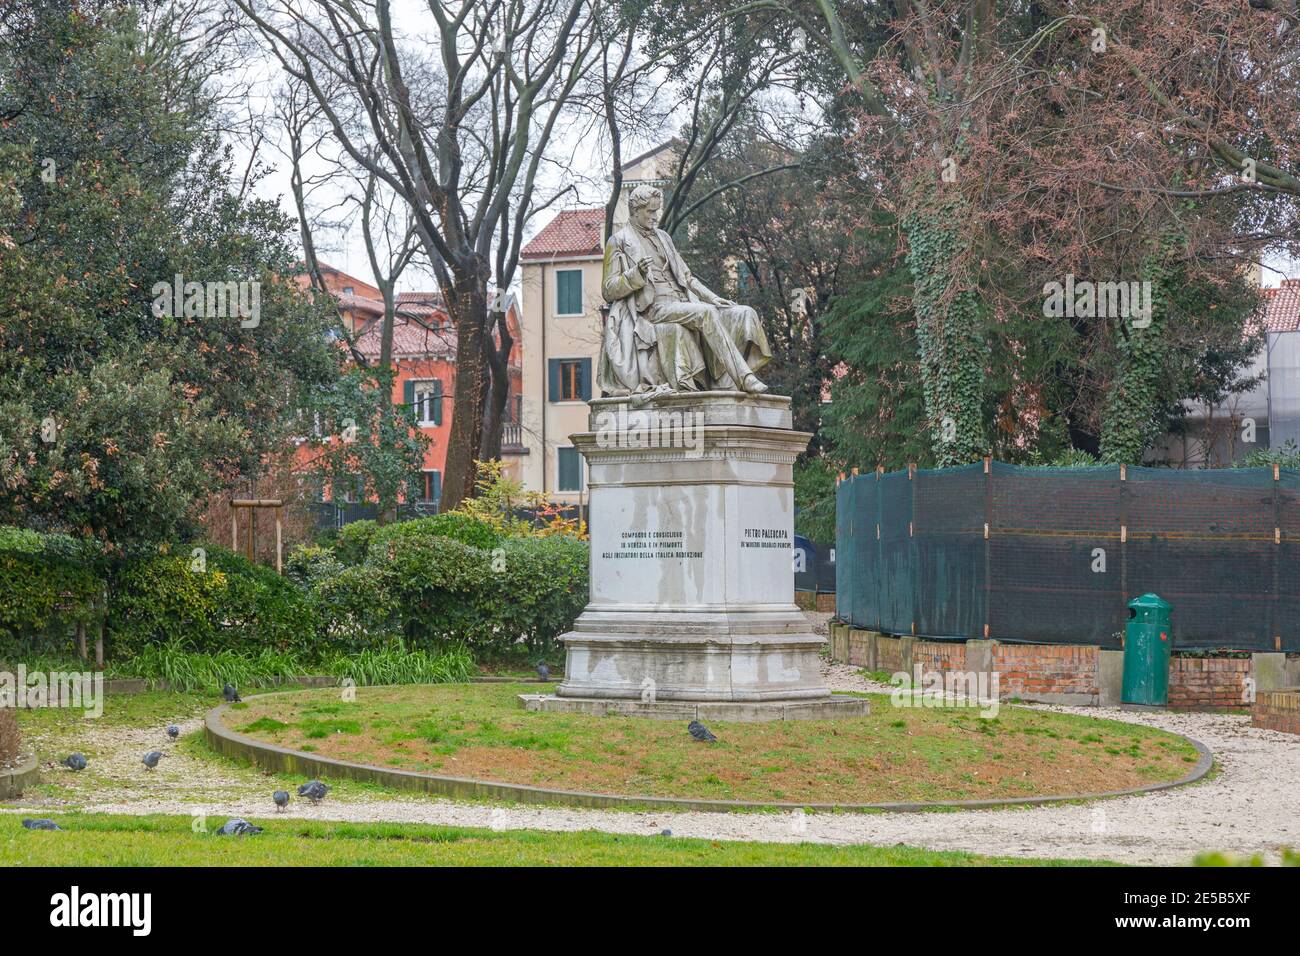 Vence, Italie - 3 février 2018 : statue de Pietro Paleopapa célèbre scientifique italien au parc de Vence, Italie. Banque D'Images